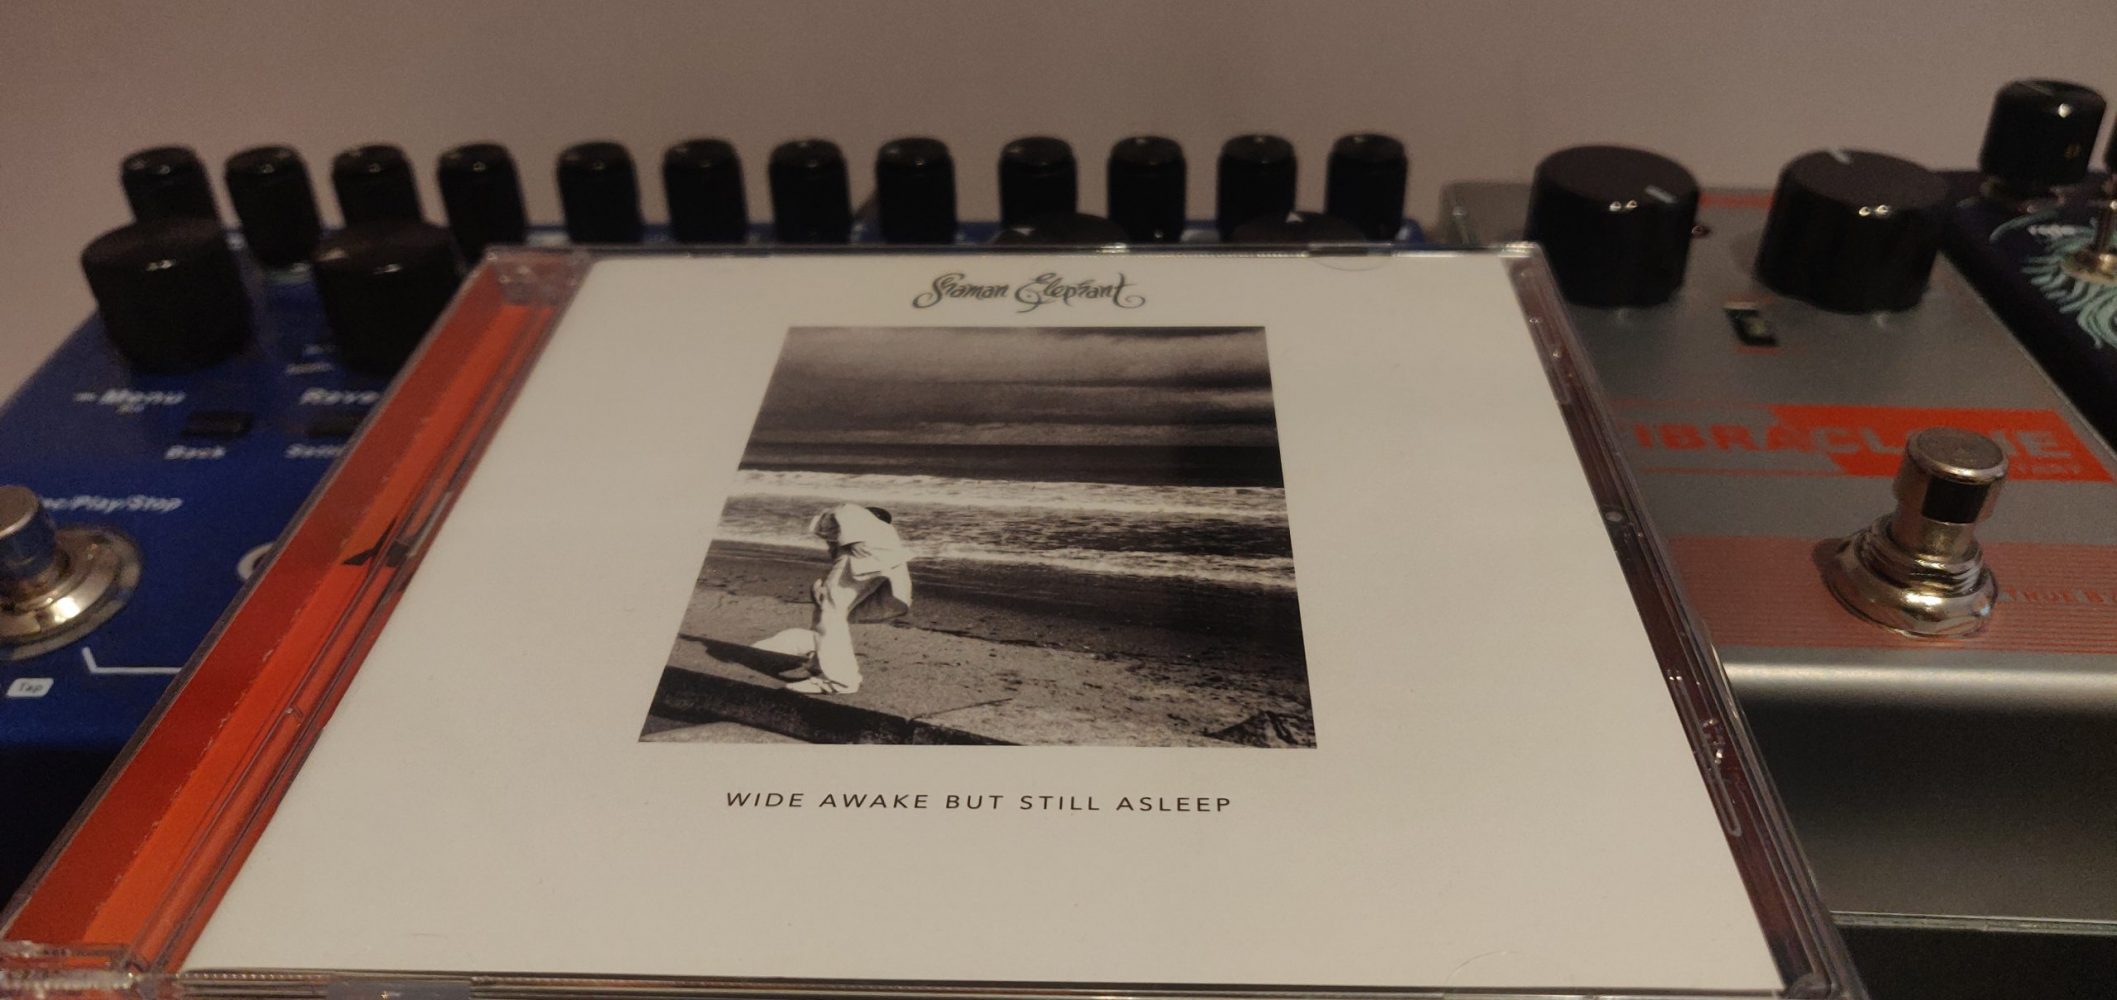 'Wide Awake But Still Asleep' Album Cover